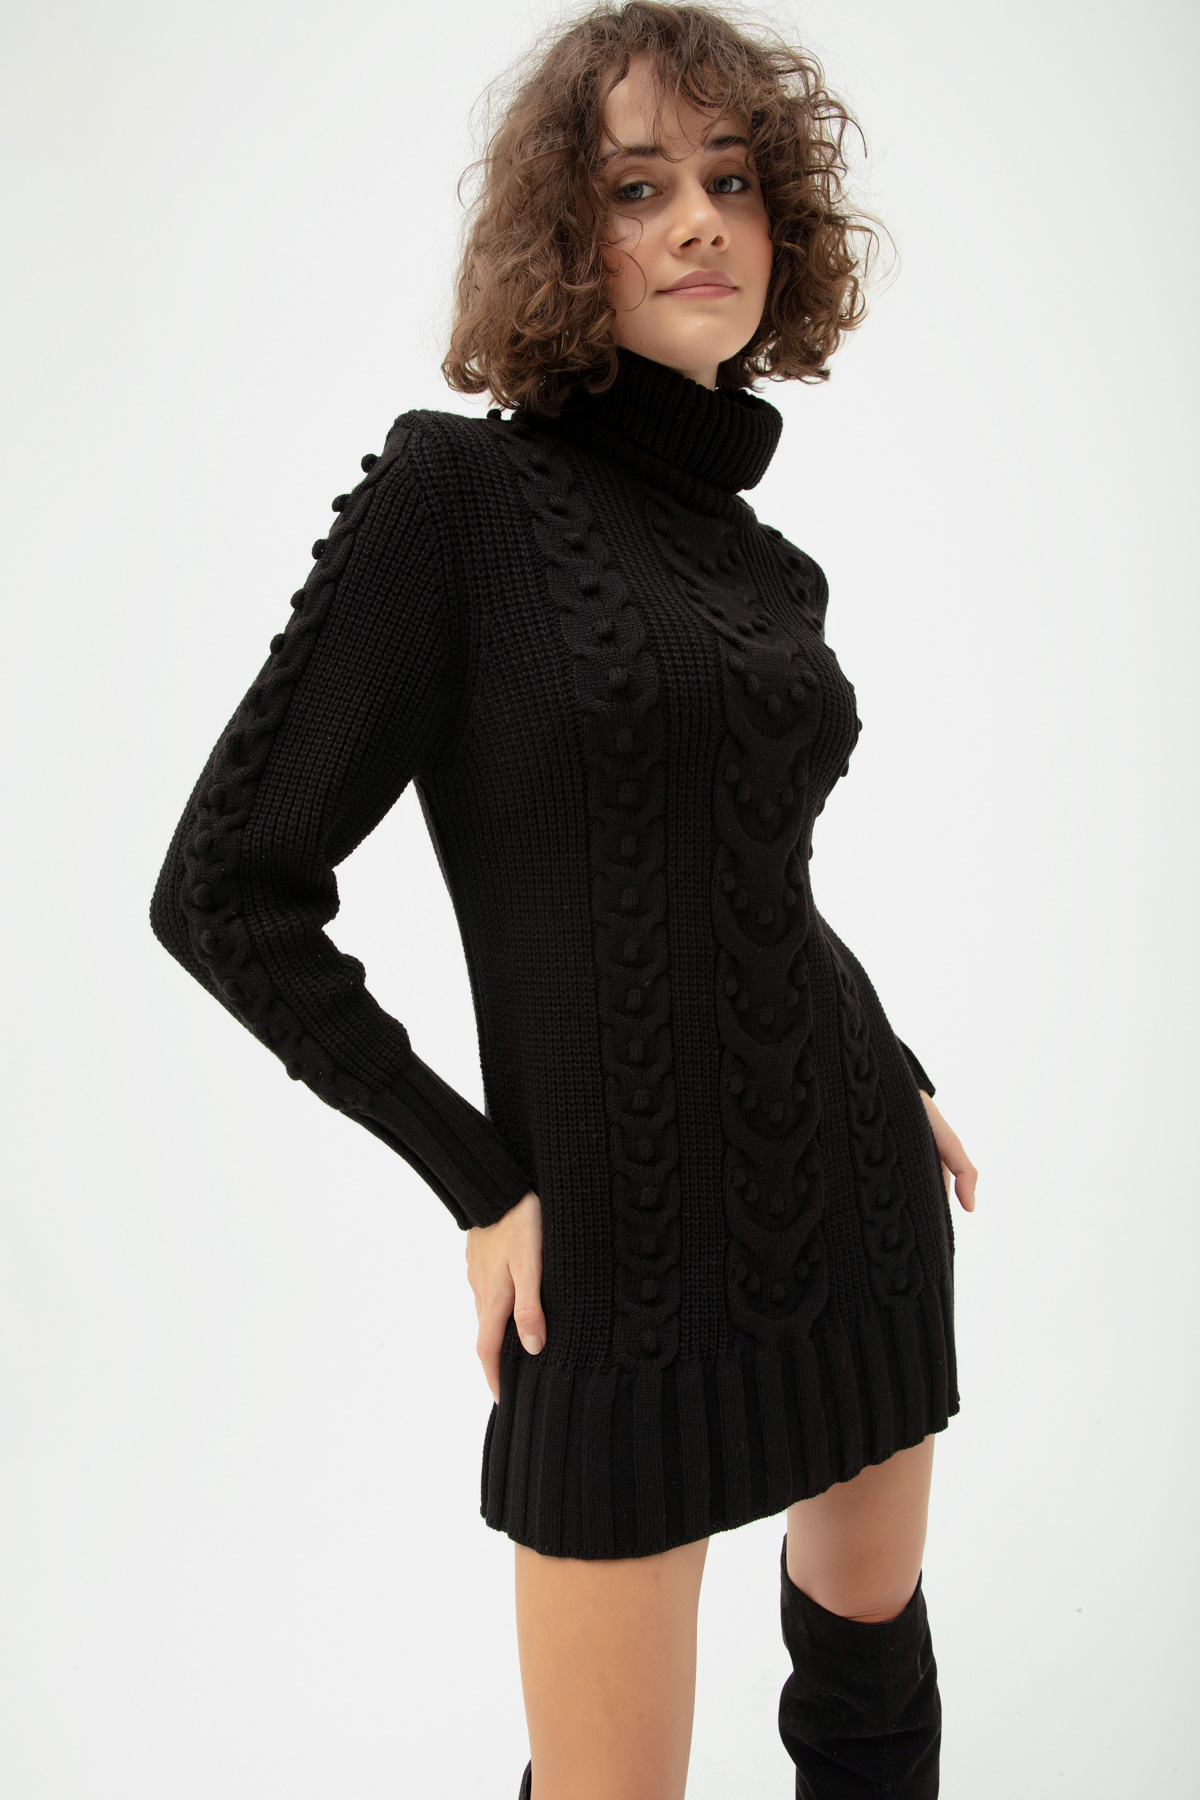 Women's Black Turtleneck Knitwear Dress